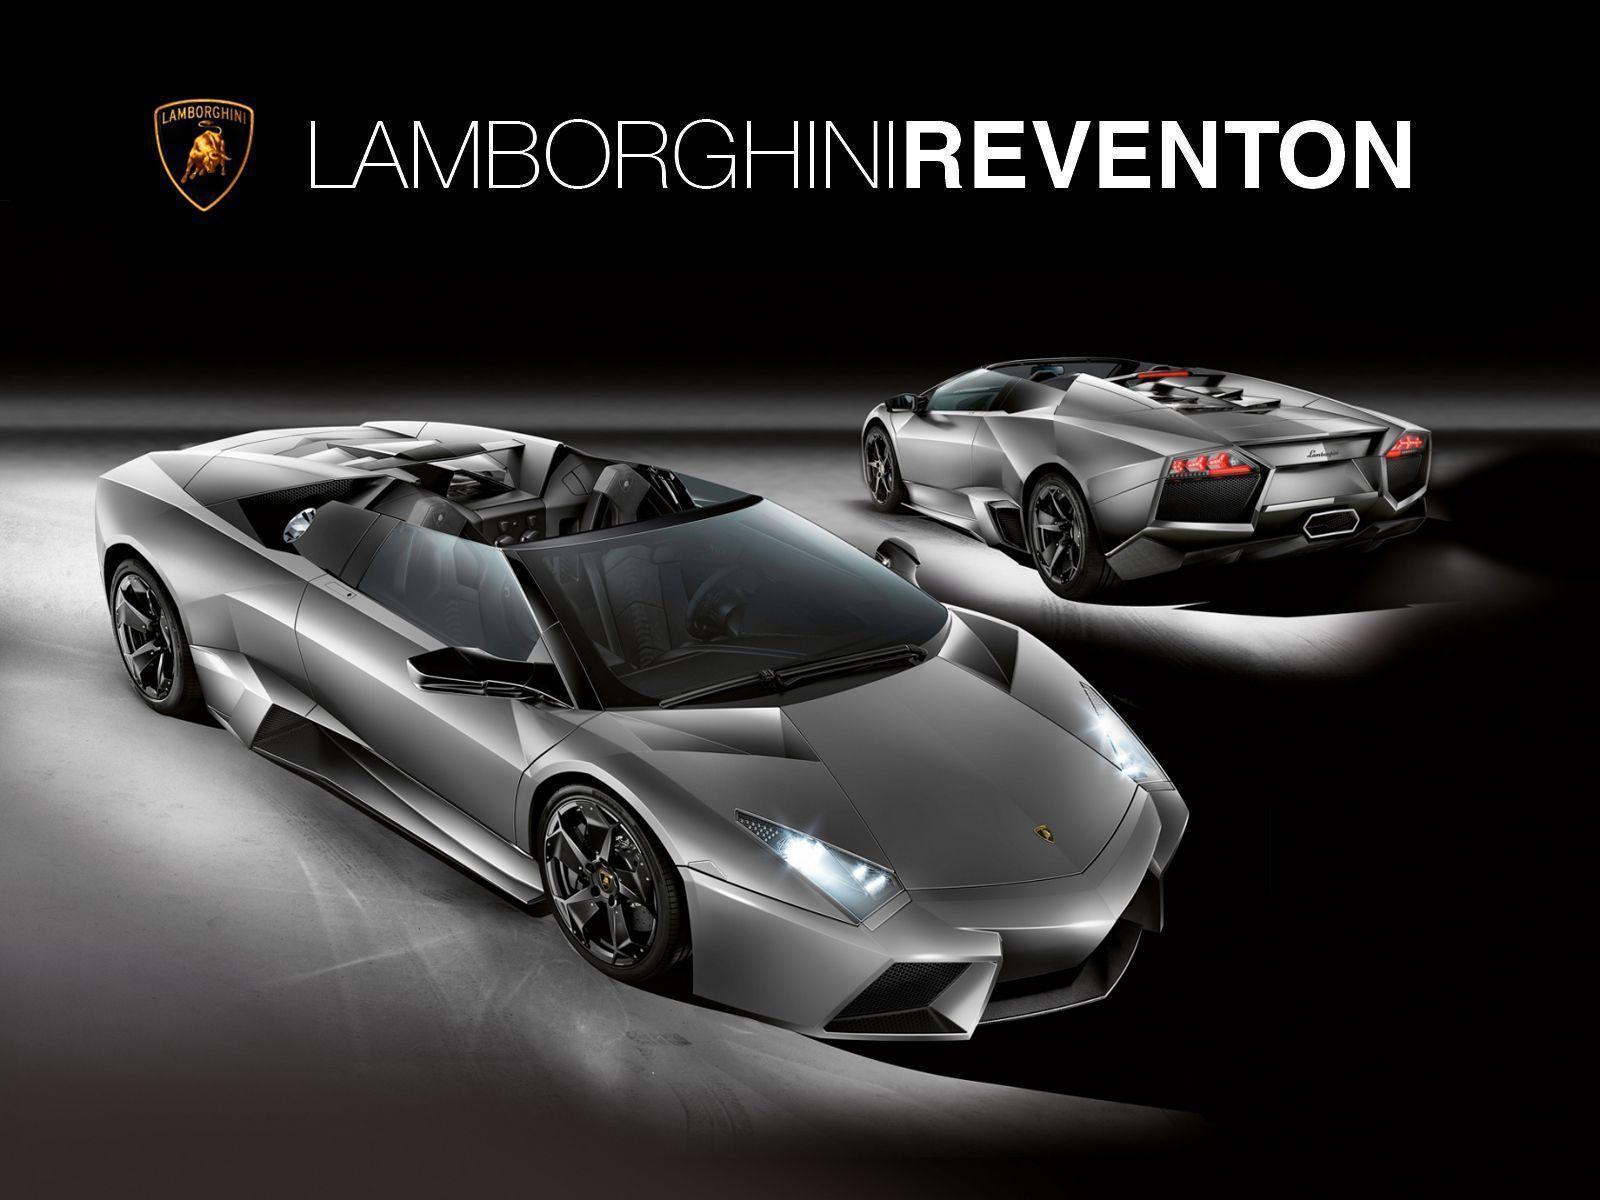 Lamborghini Reventon 1600x1200 HD Image